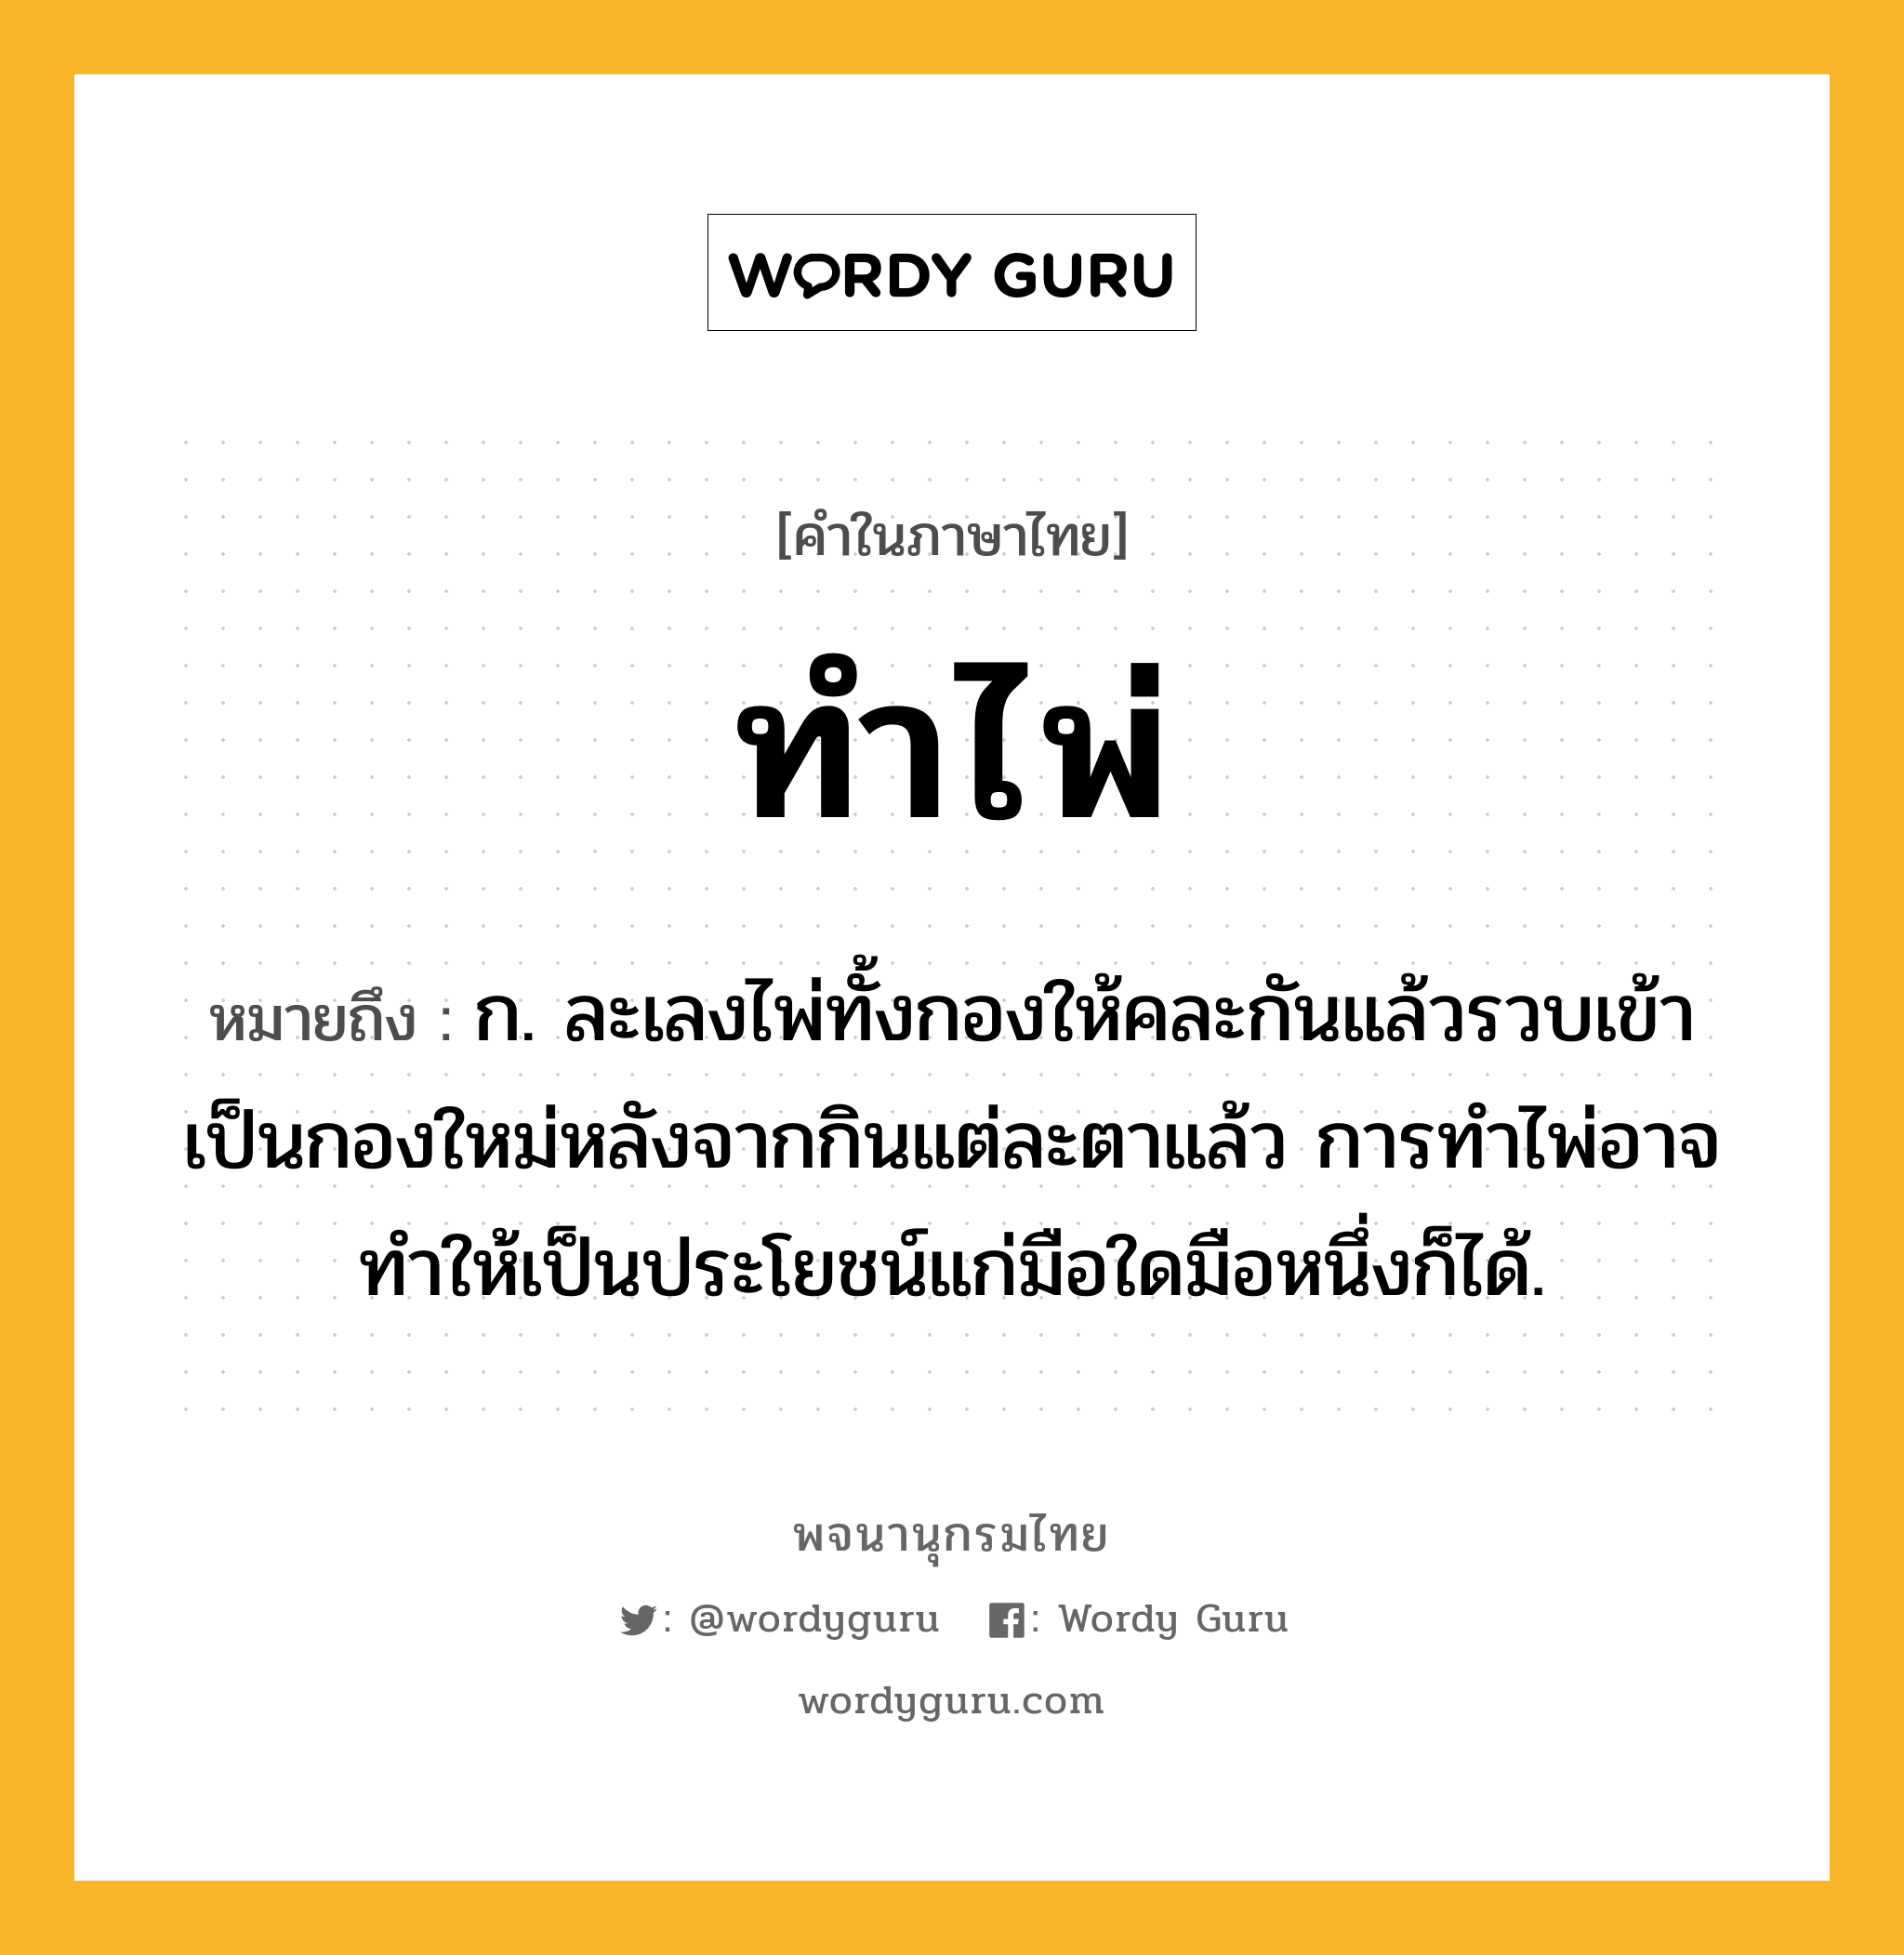 ทำไพ่ หมายถึงอะไร?, คำในภาษาไทย ทำไพ่ หมายถึง ก. ละเลงไพ่ทั้งกองให้คละกันแล้วรวบเข้าเป็นกองใหม่หลังจากกินแต่ละตาแล้ว การทําไพ่อาจทําให้เป็นประโยชน์แก่มือใดมือหนึ่งก็ได้.